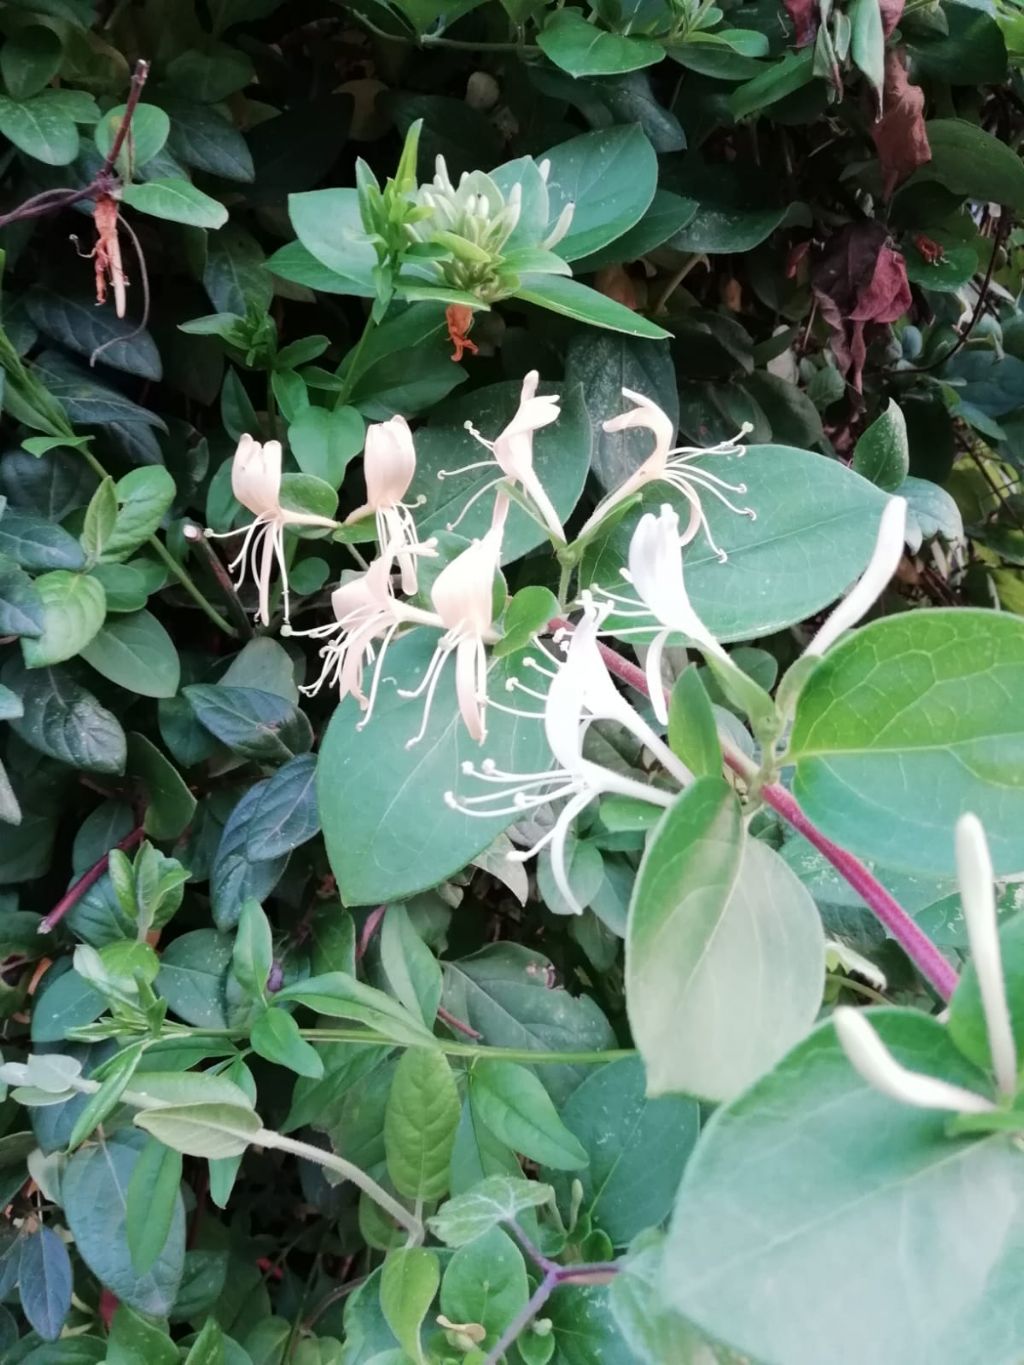 Fiori bianchi: Lonicera japonica (Caprifoliaceae)